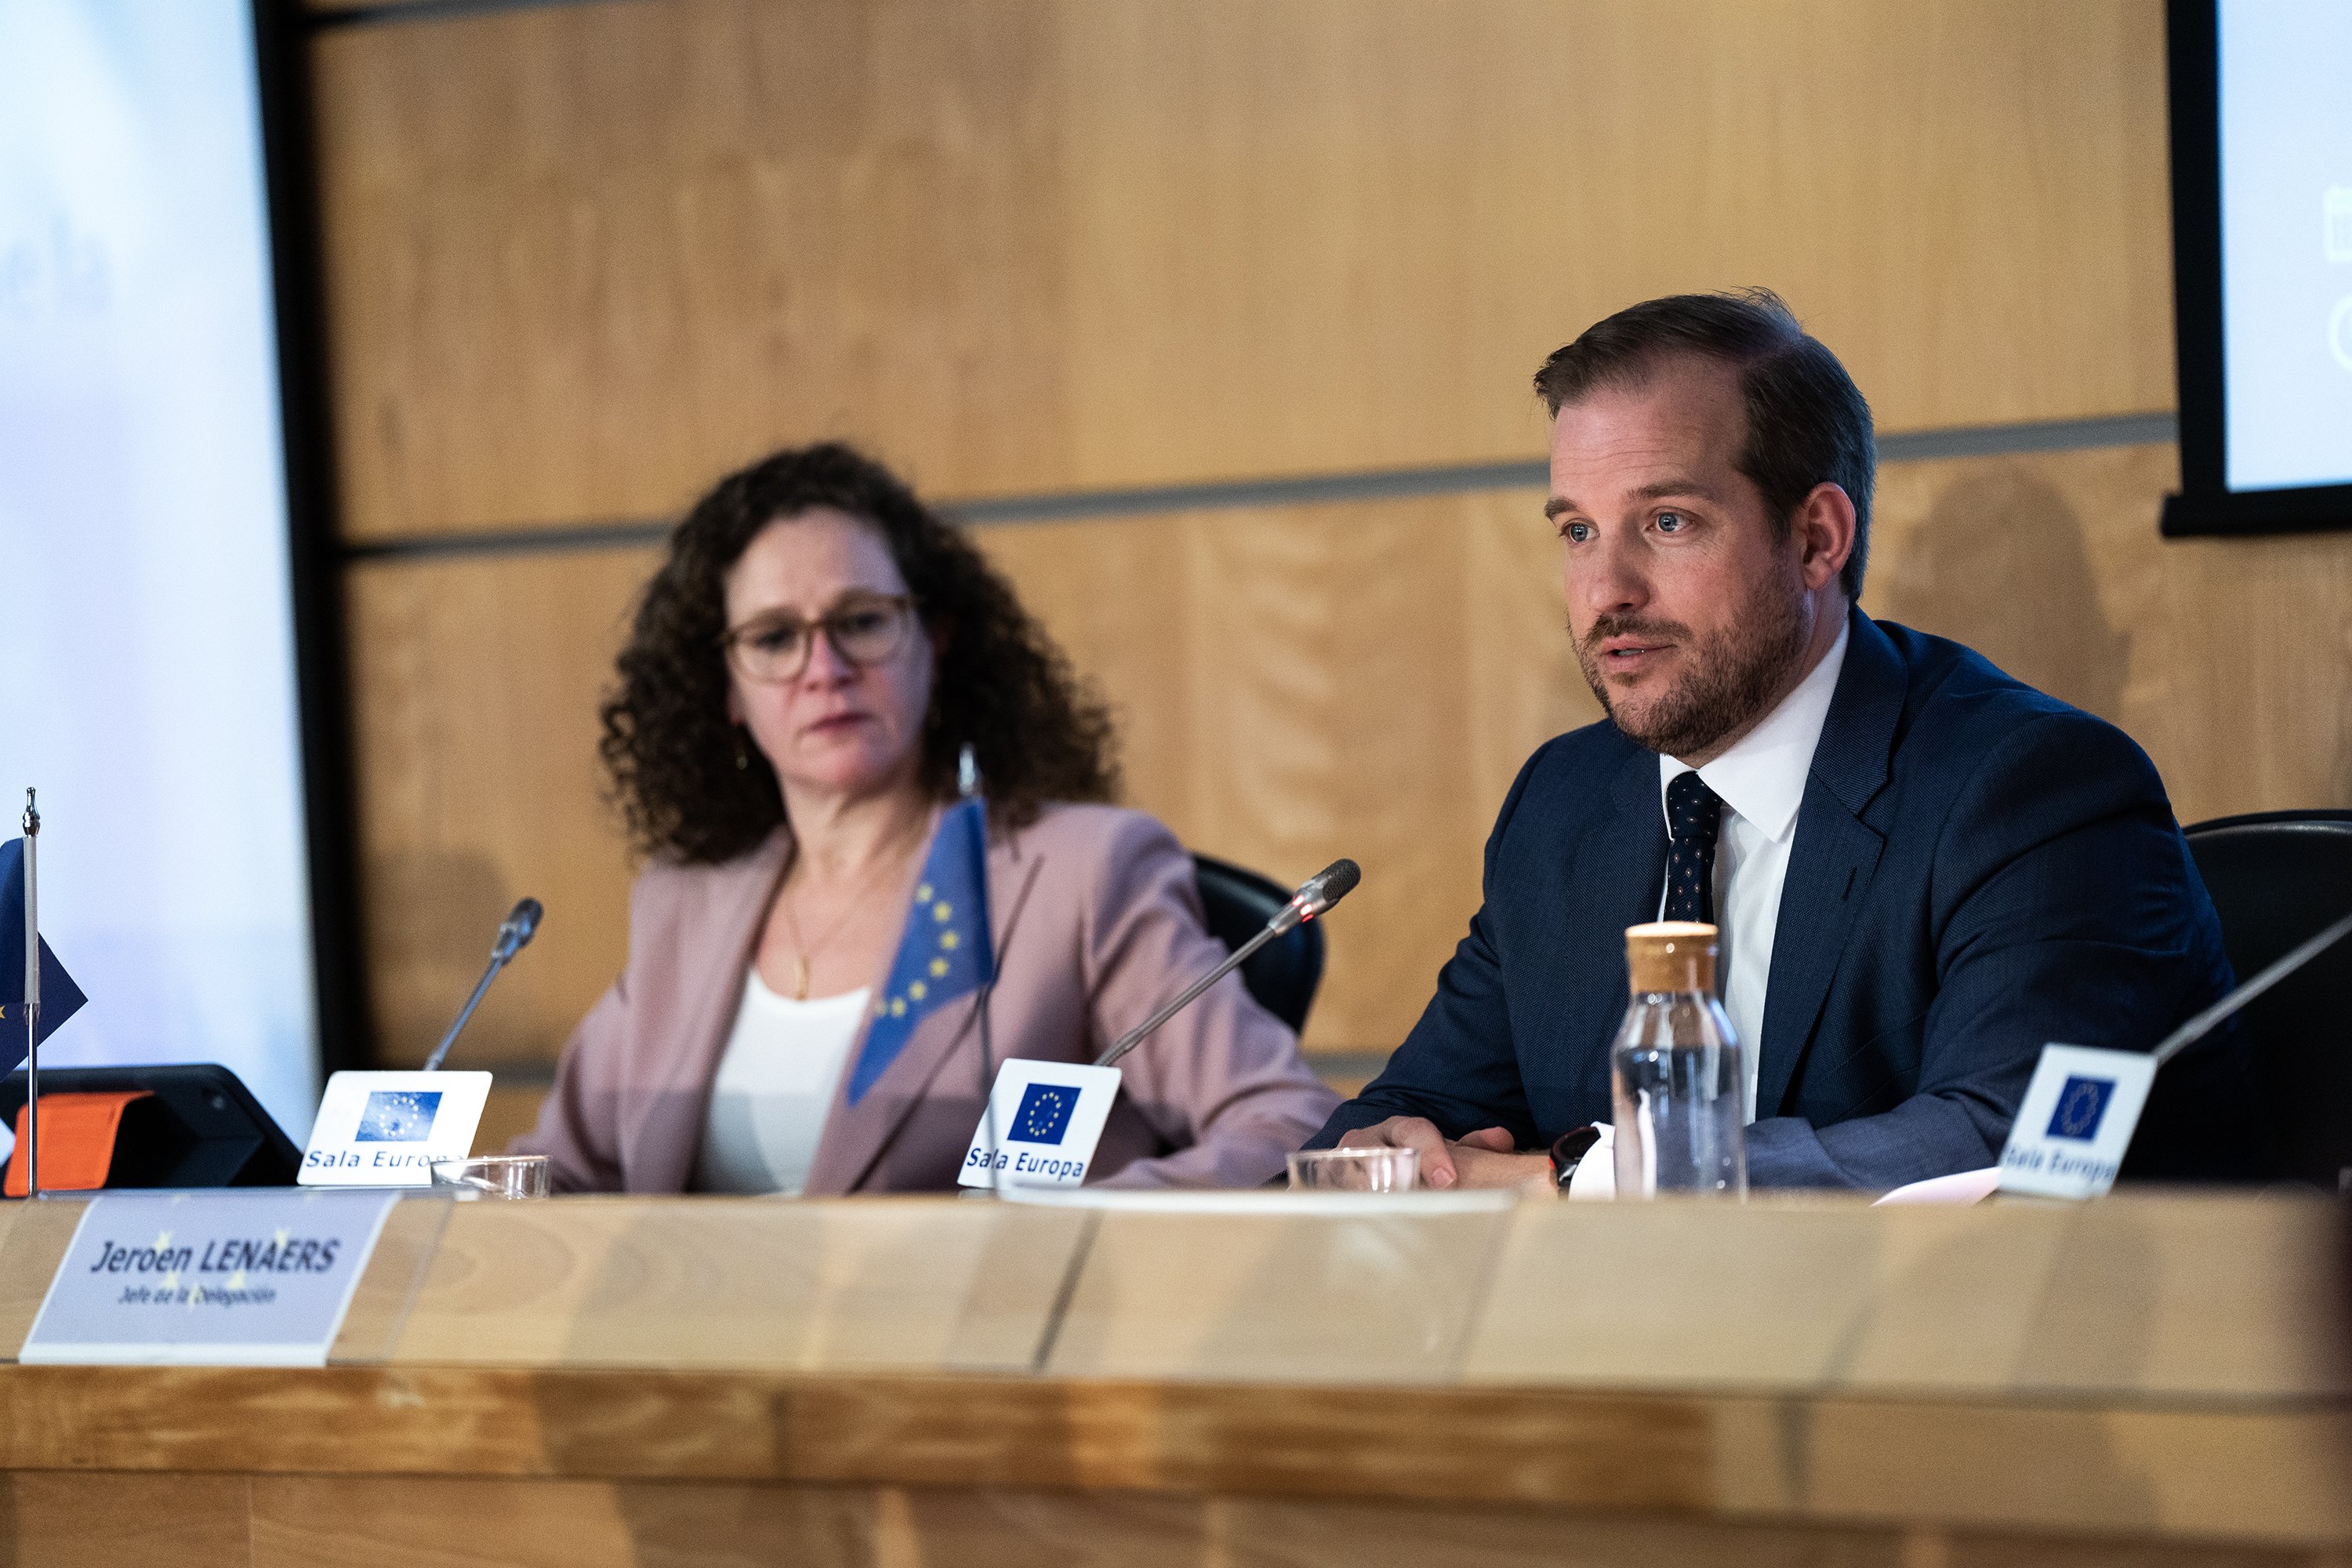 La comissió Pegasus renya el govern espanyol: "No hem rebut informació significativa"